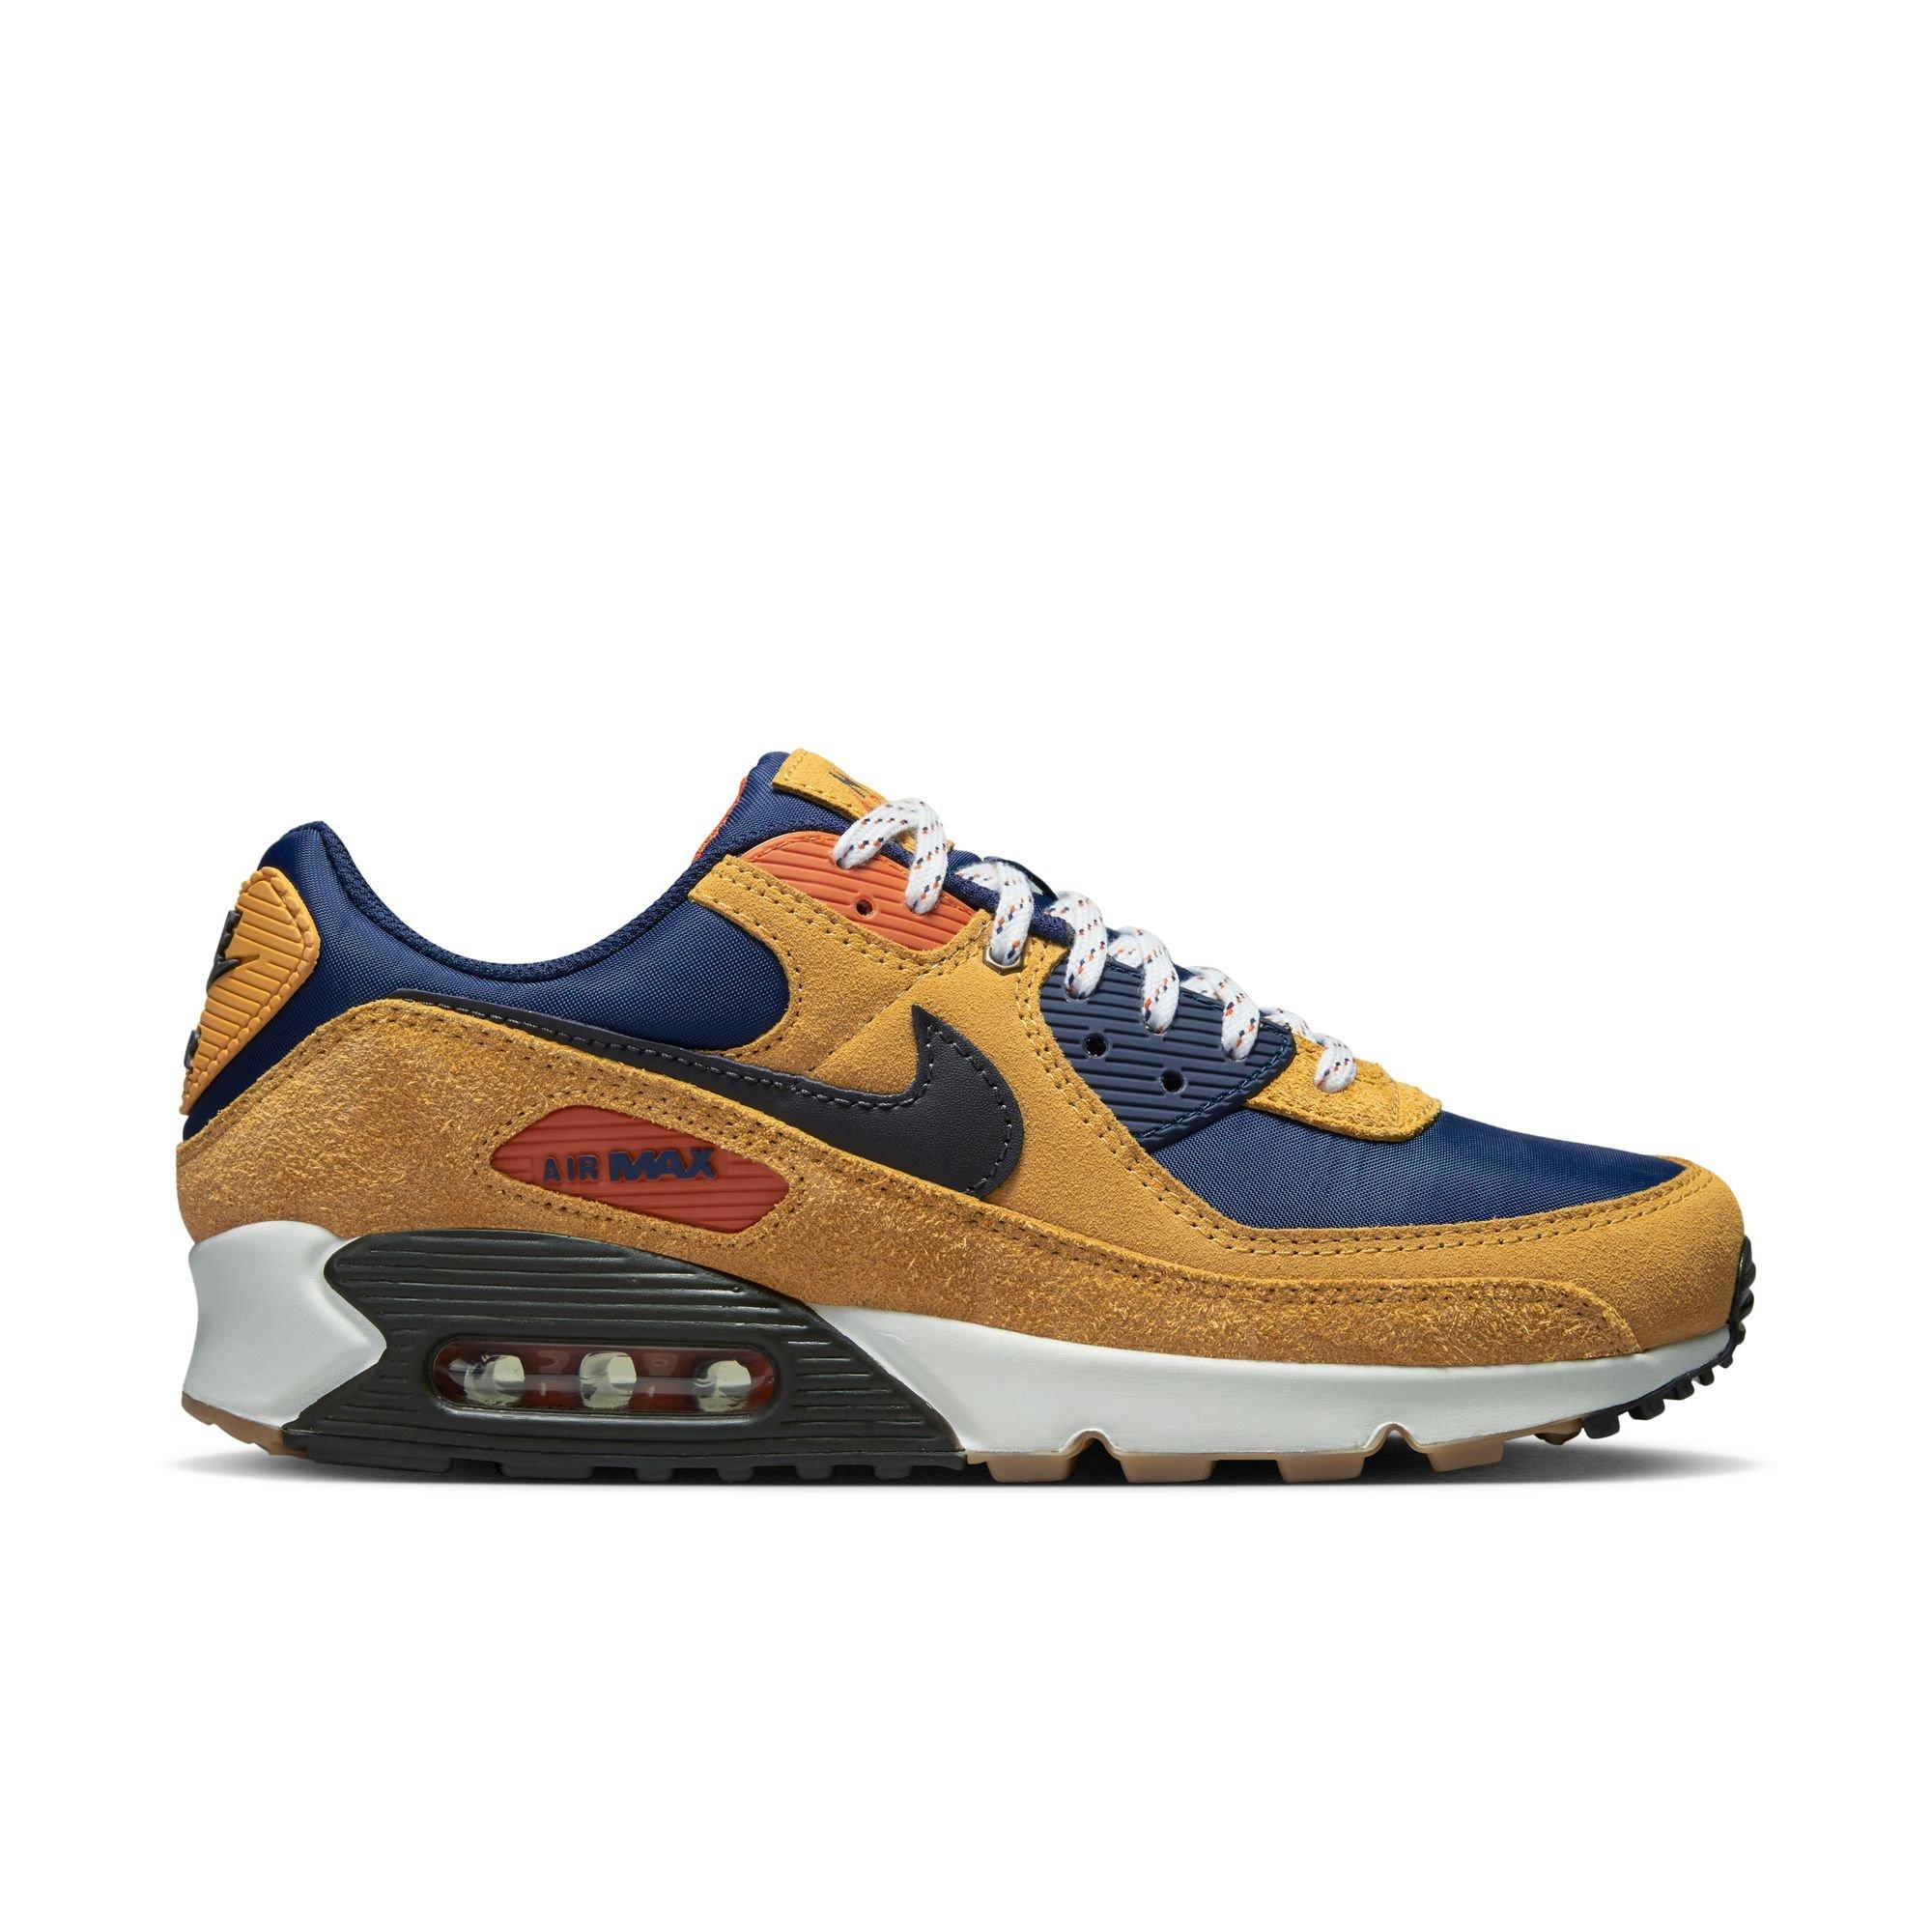 Nike Air Max 90 "Bucktan/Velvet Orange" Men's Shoe